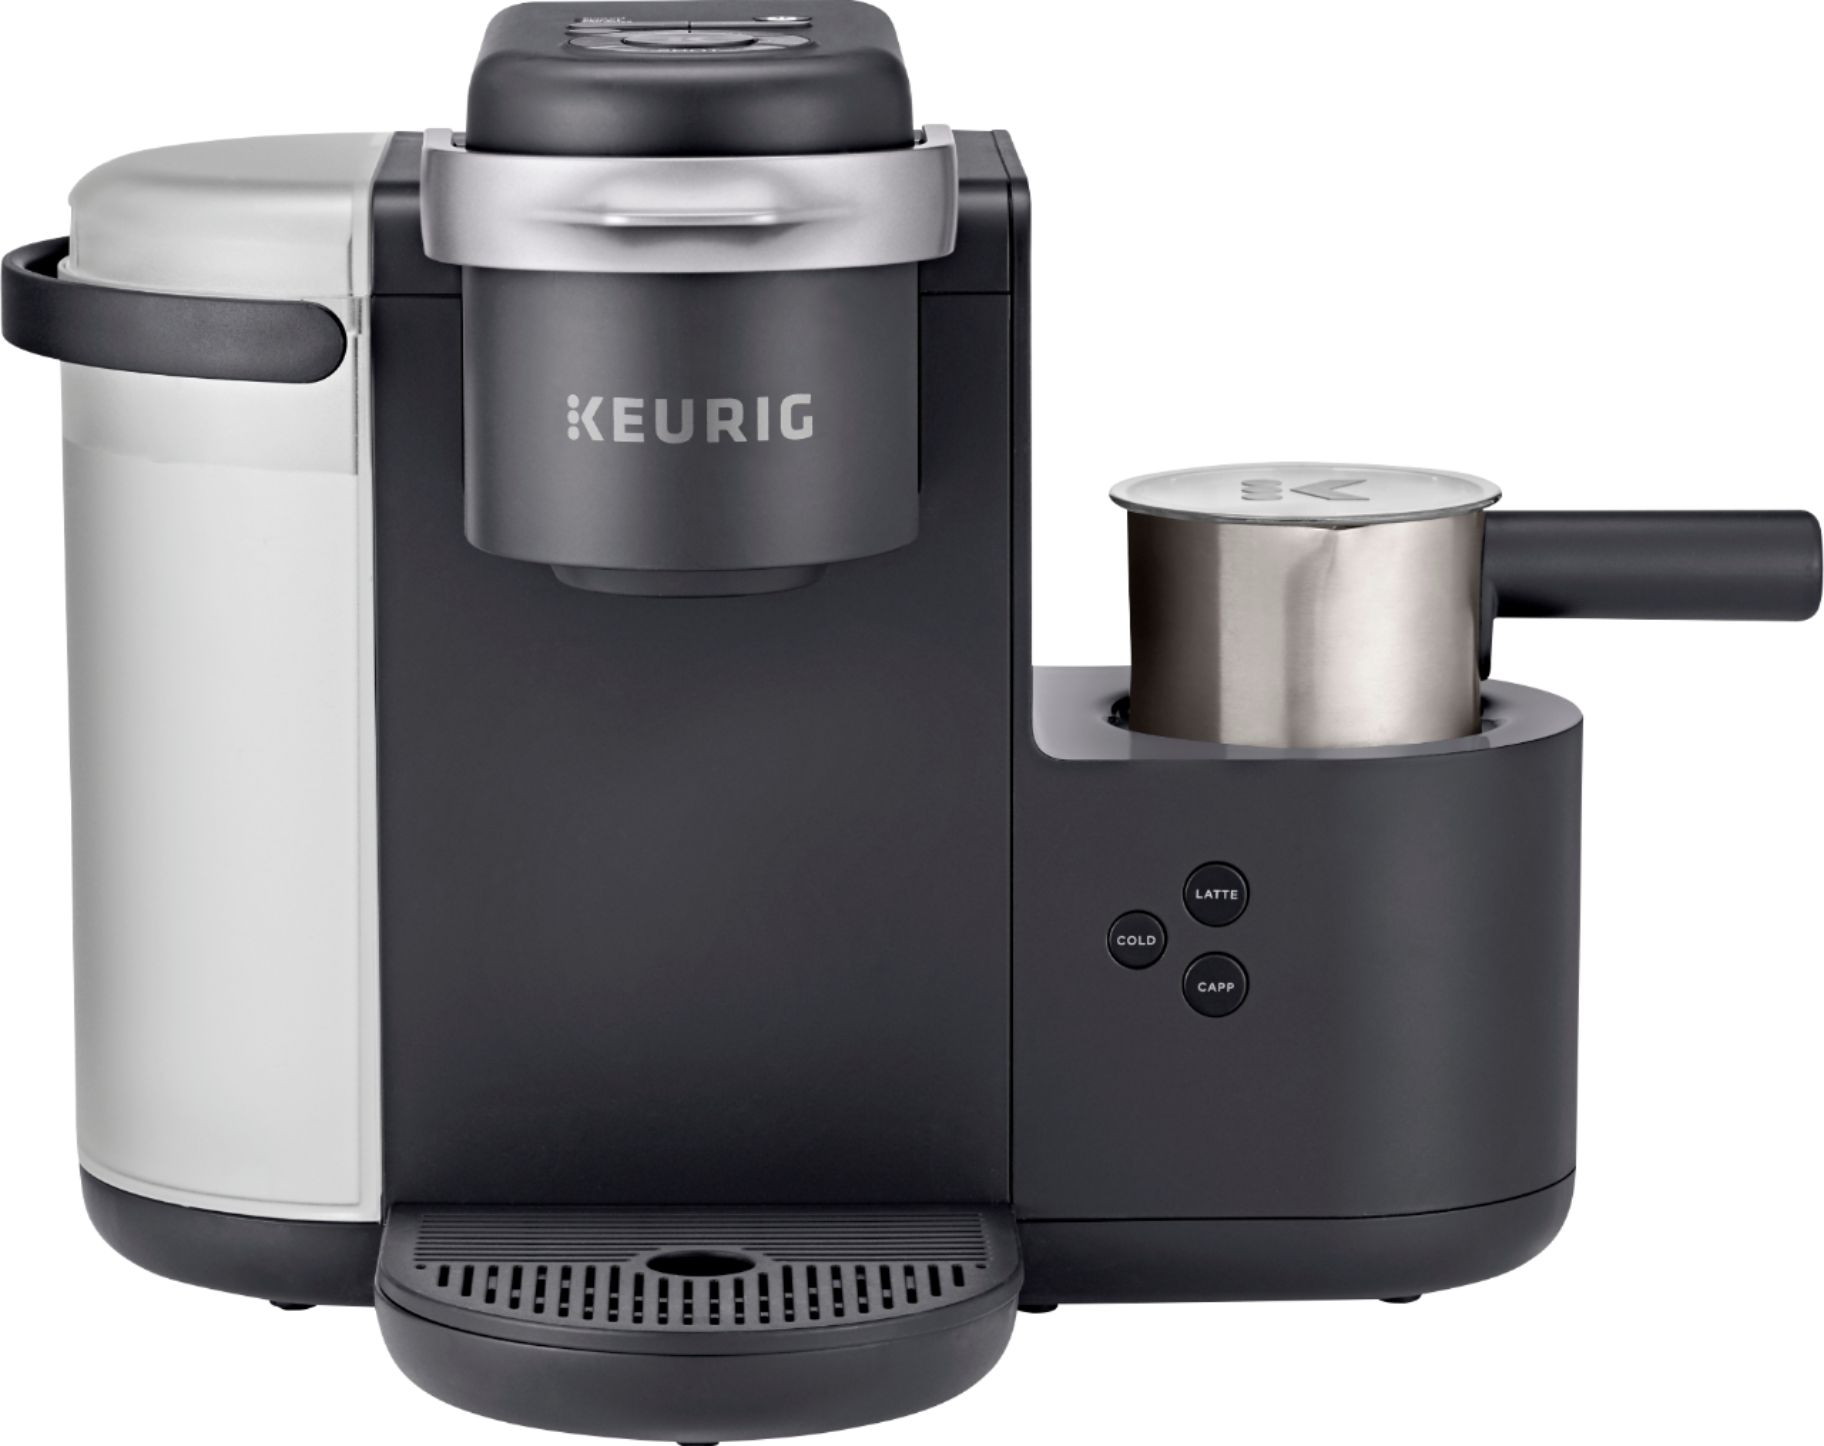 Keurig K-Cafe Single Serve K-Cup Coffee Maker Dark Charcoal 5000201735 -  Best Buy